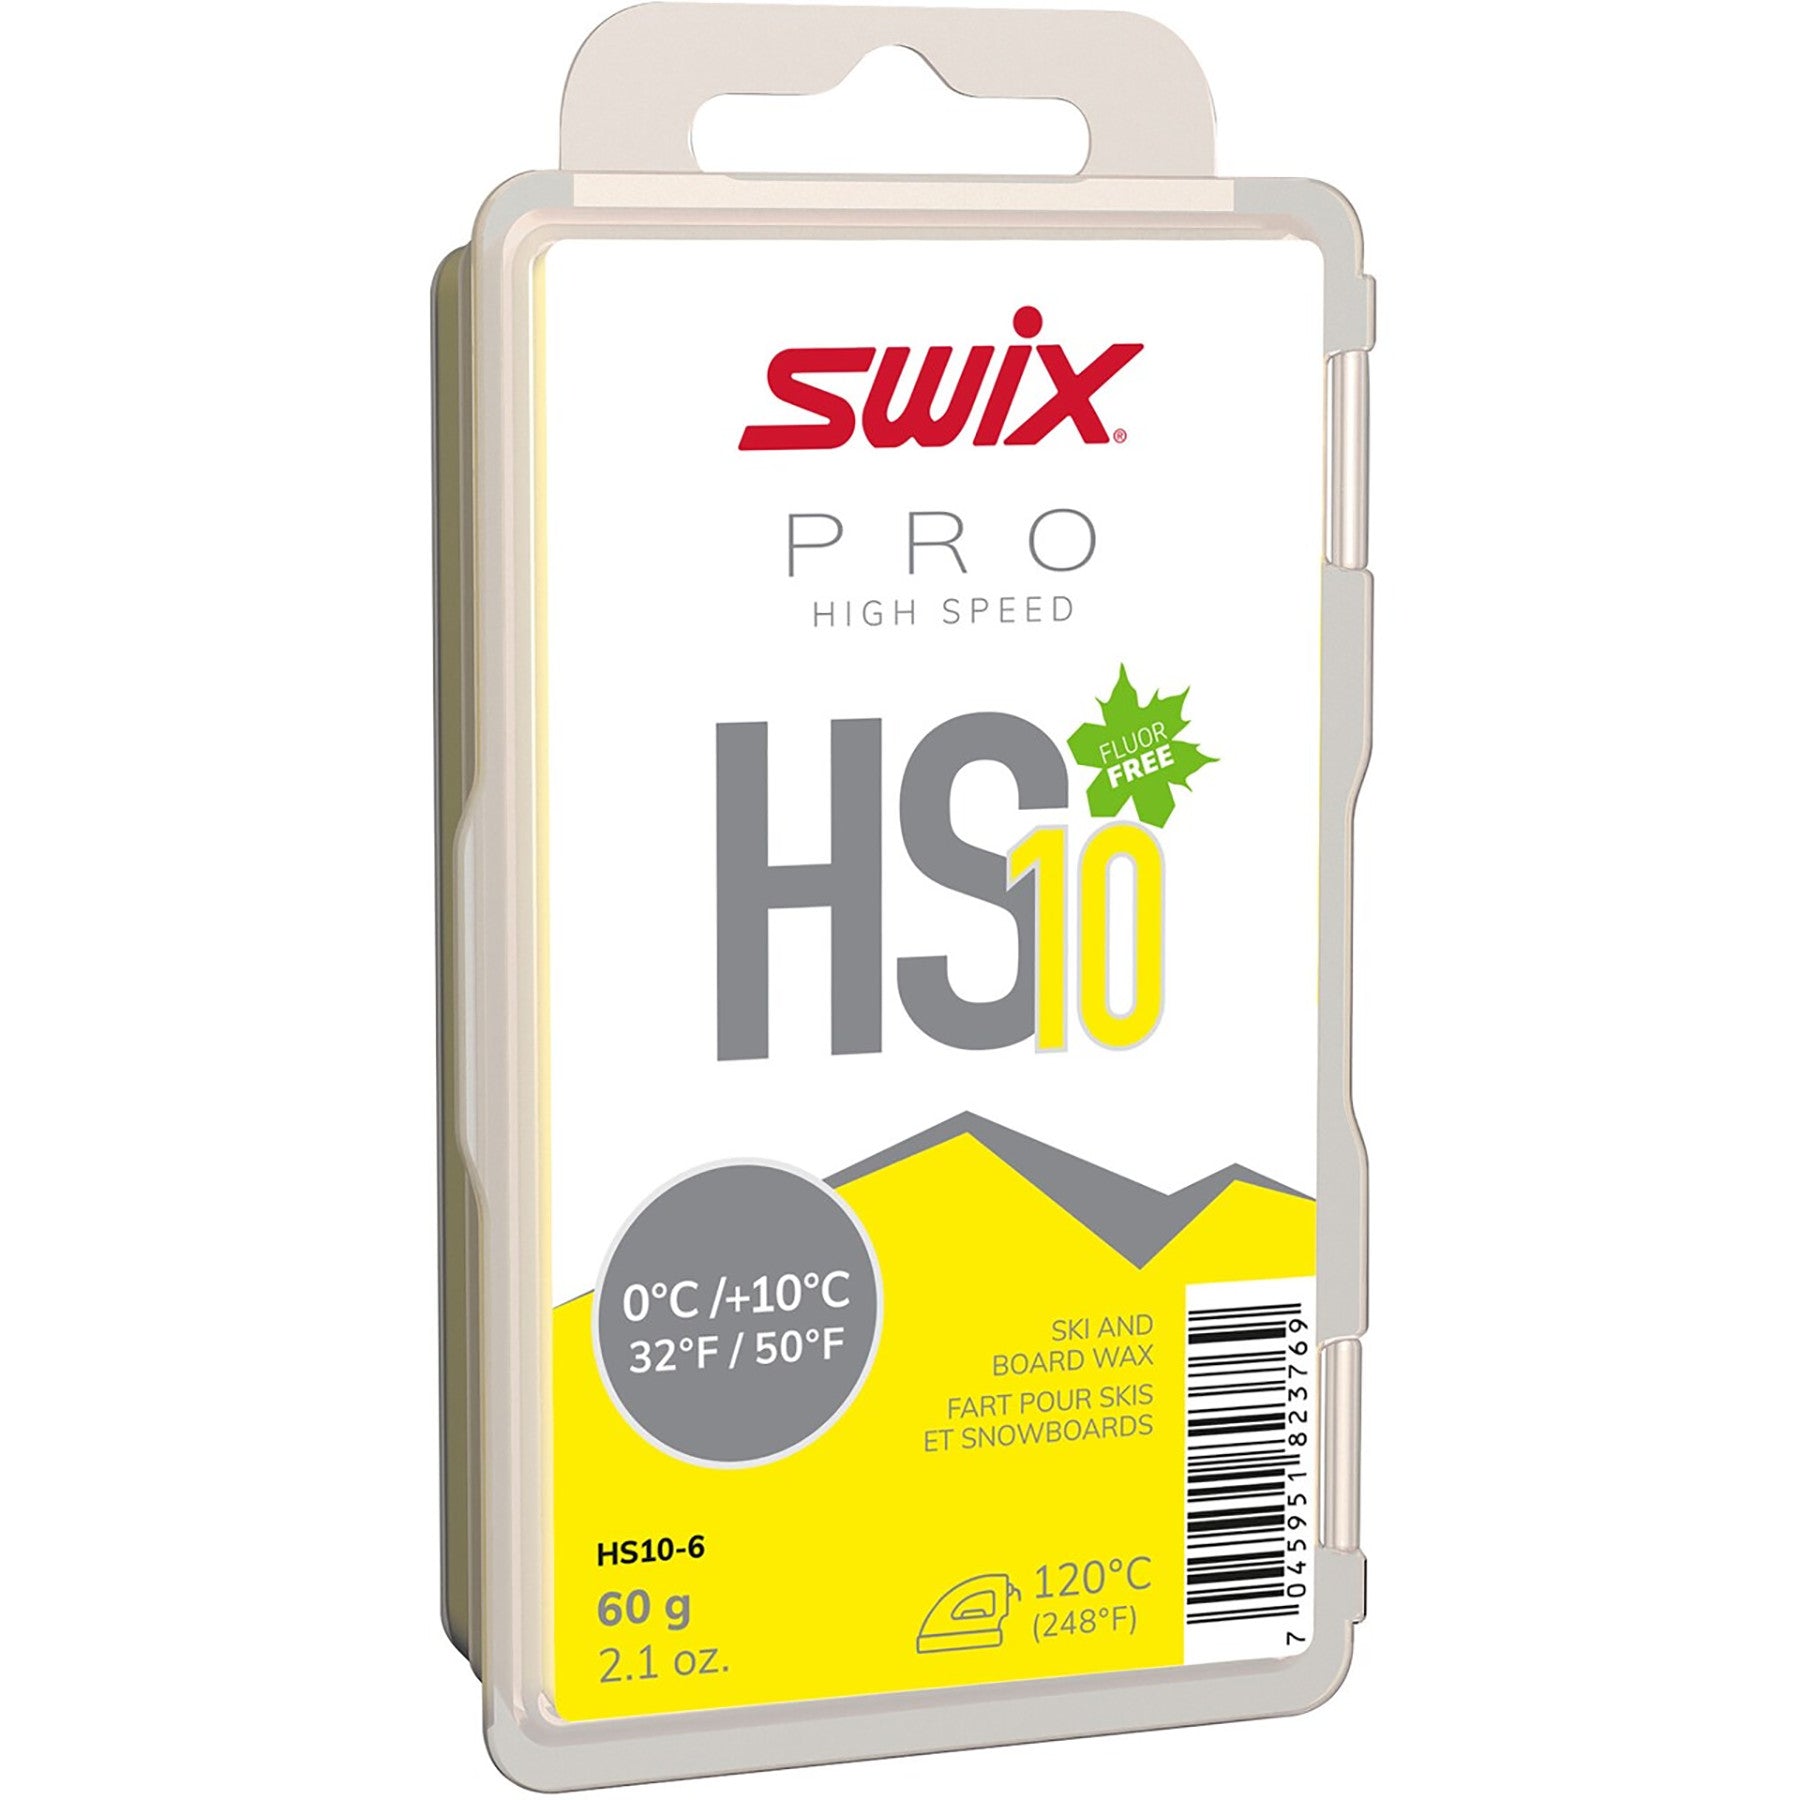 Swix High Speed Glide Wax 60g - 0